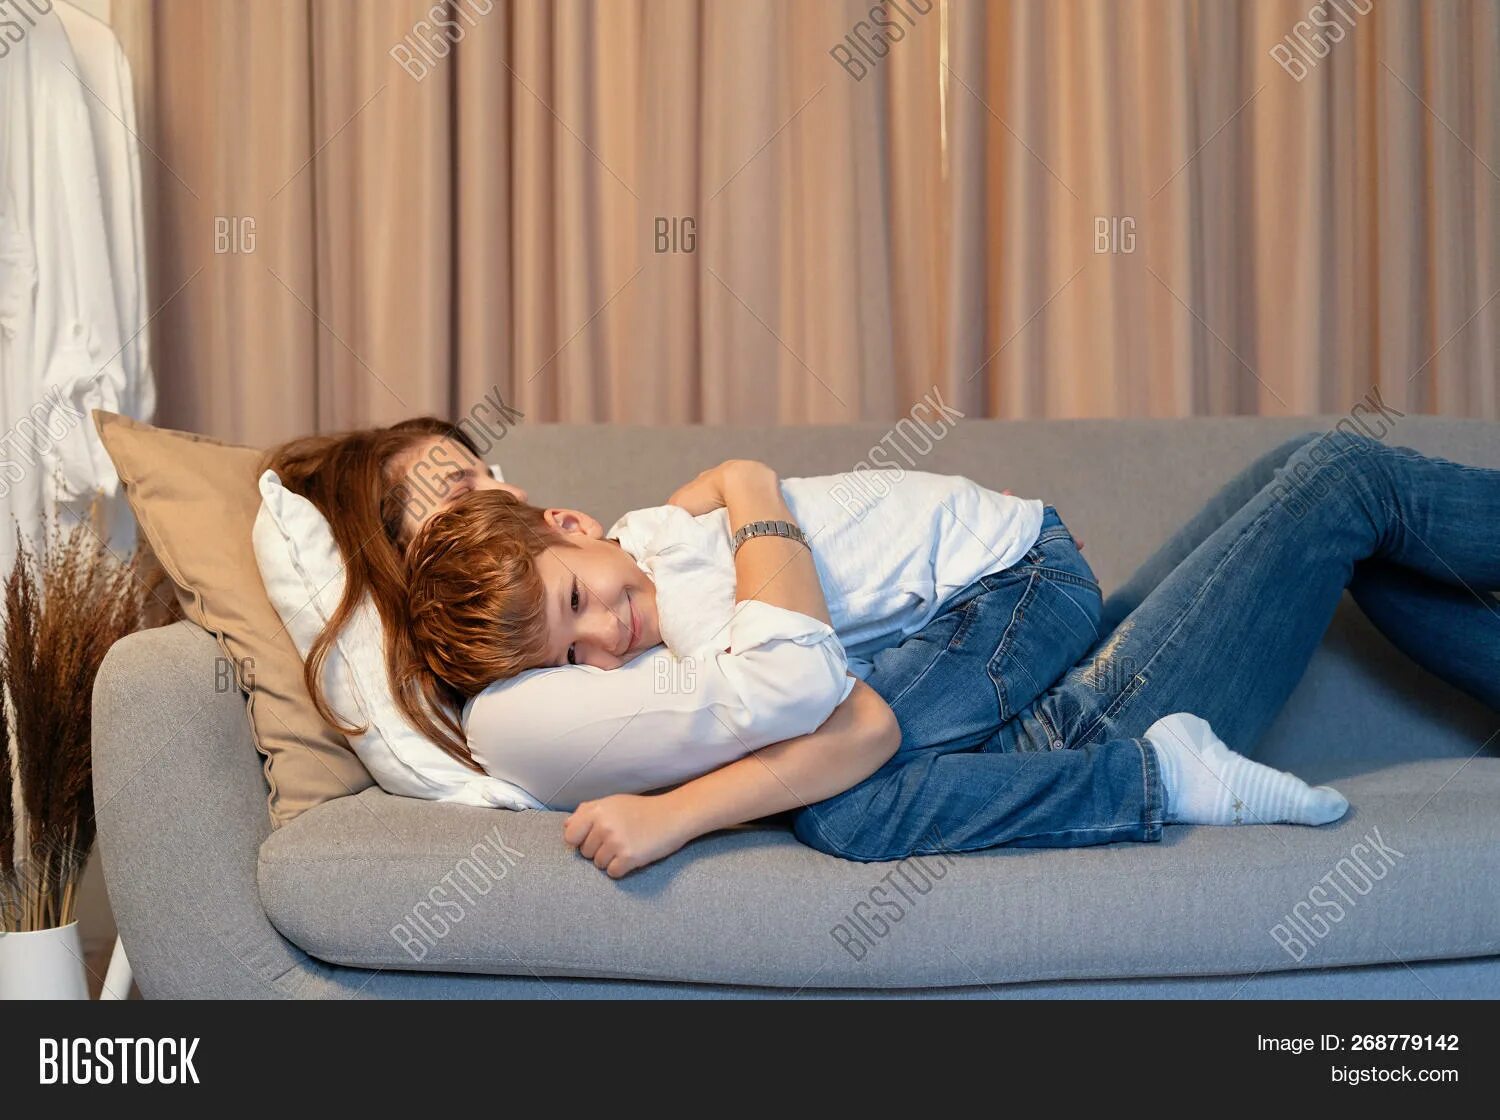 Она лежит как маме. Фотосессия на диване с сыном и мама. Мама с ребенком на диване. Мать обнимает сына на диване. Мать сидит с сыном на диване.